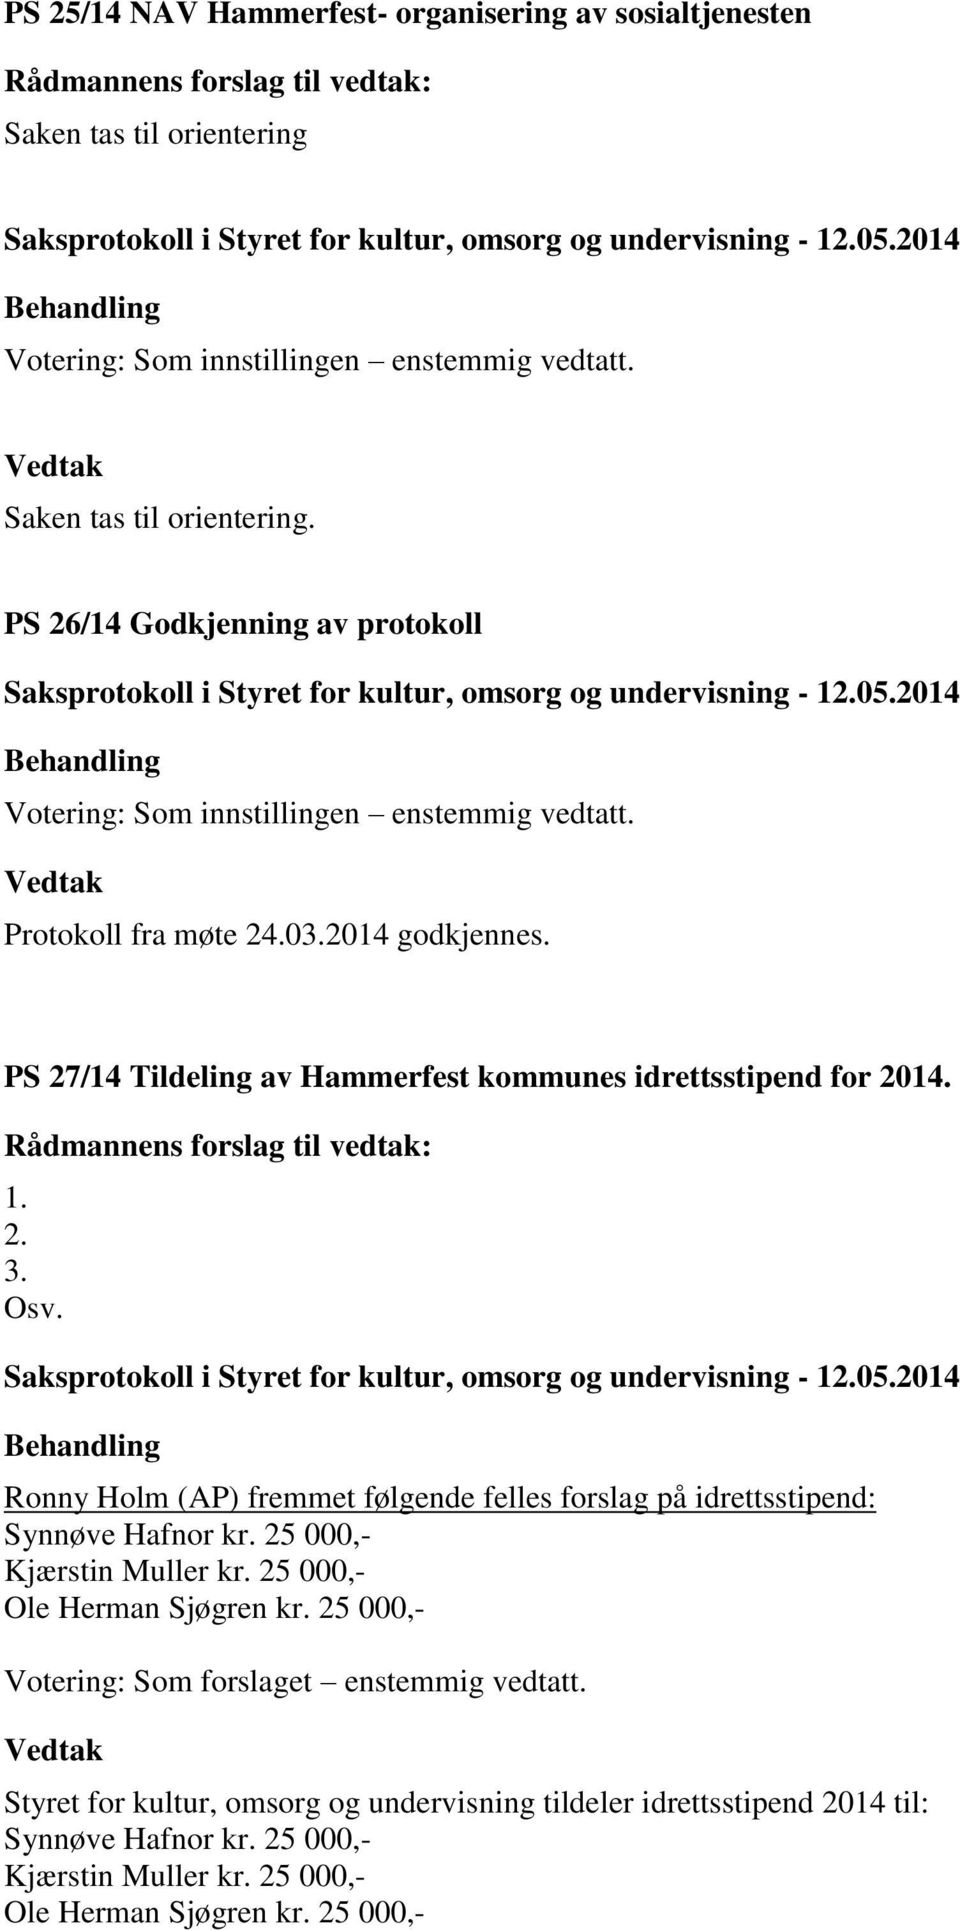 Ronny Holm (AP) fremmet følgende felles forslag på idrettsstipend: Synnøve Hafnor kr. 25 000,- Kjærstin Muller kr. 25 000,- Ole Herman Sjøgren kr.